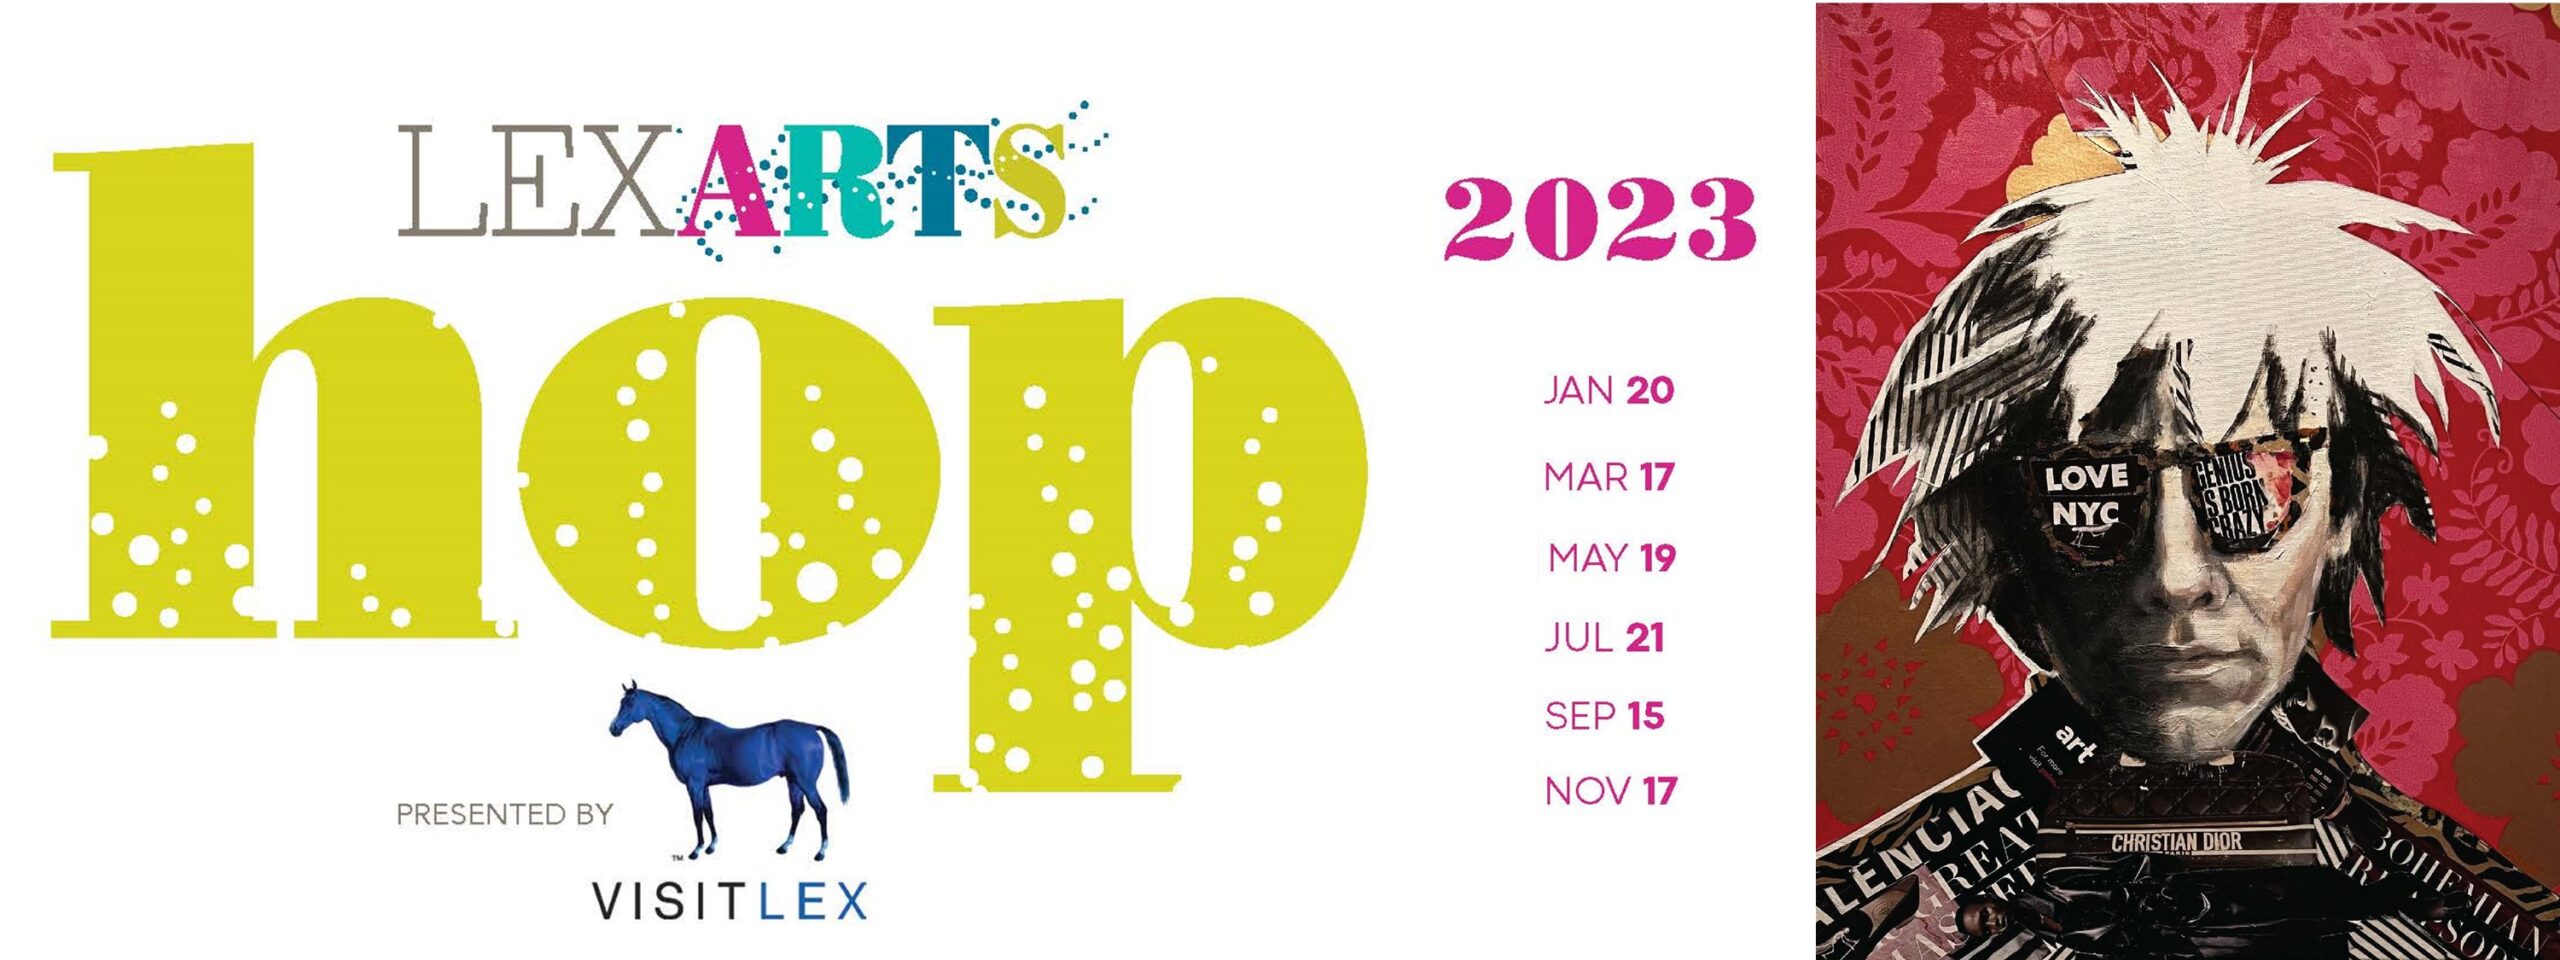 The 5 Best Art Sets for Kids in 2023 (October) – Artlex